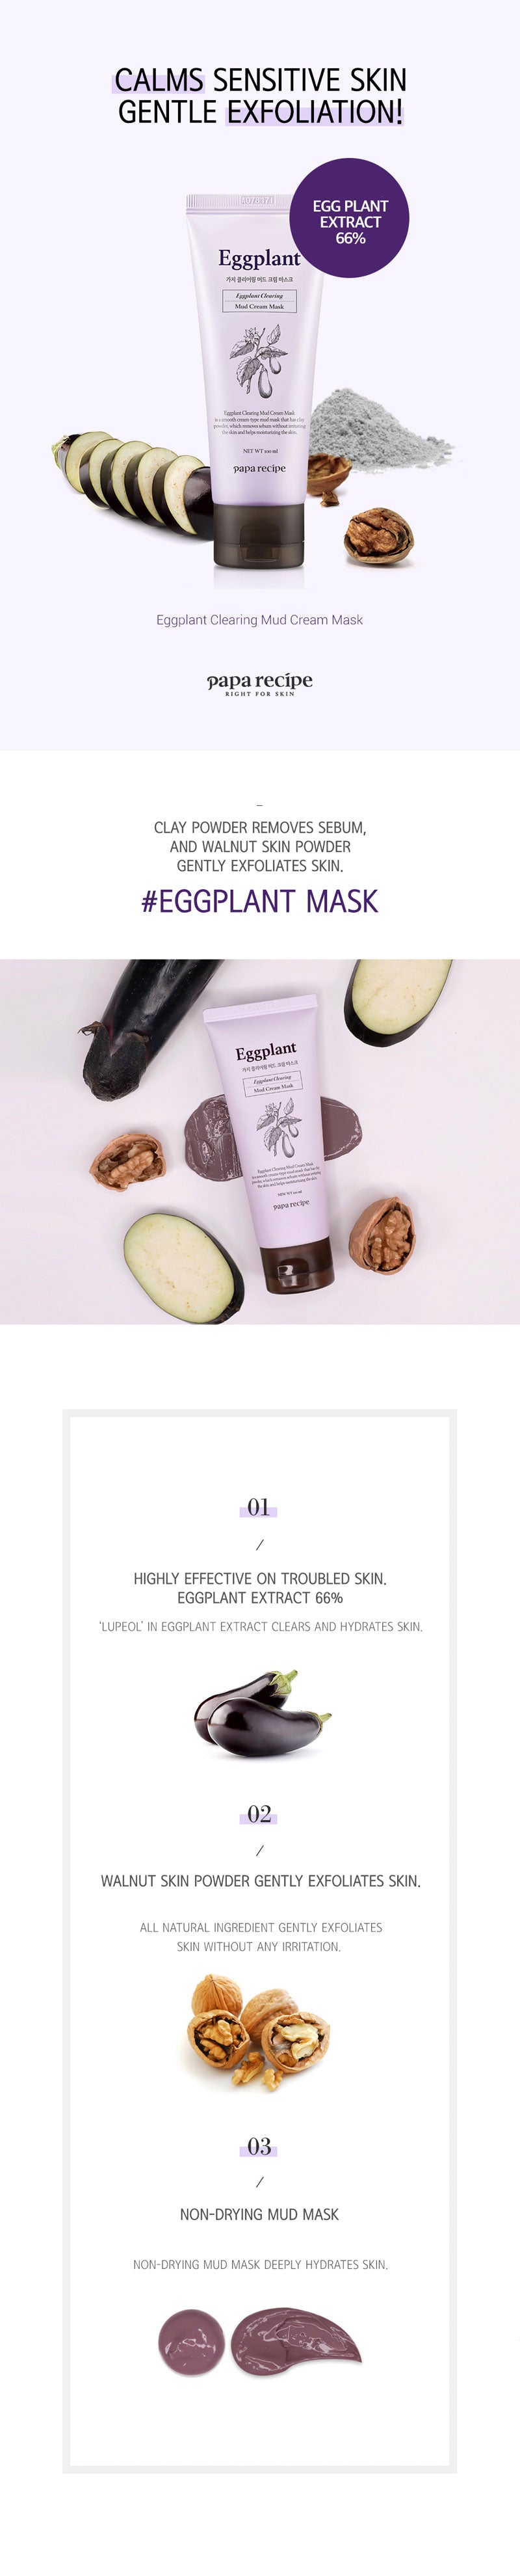 paparecipe-eggplant-mud-1.jpg